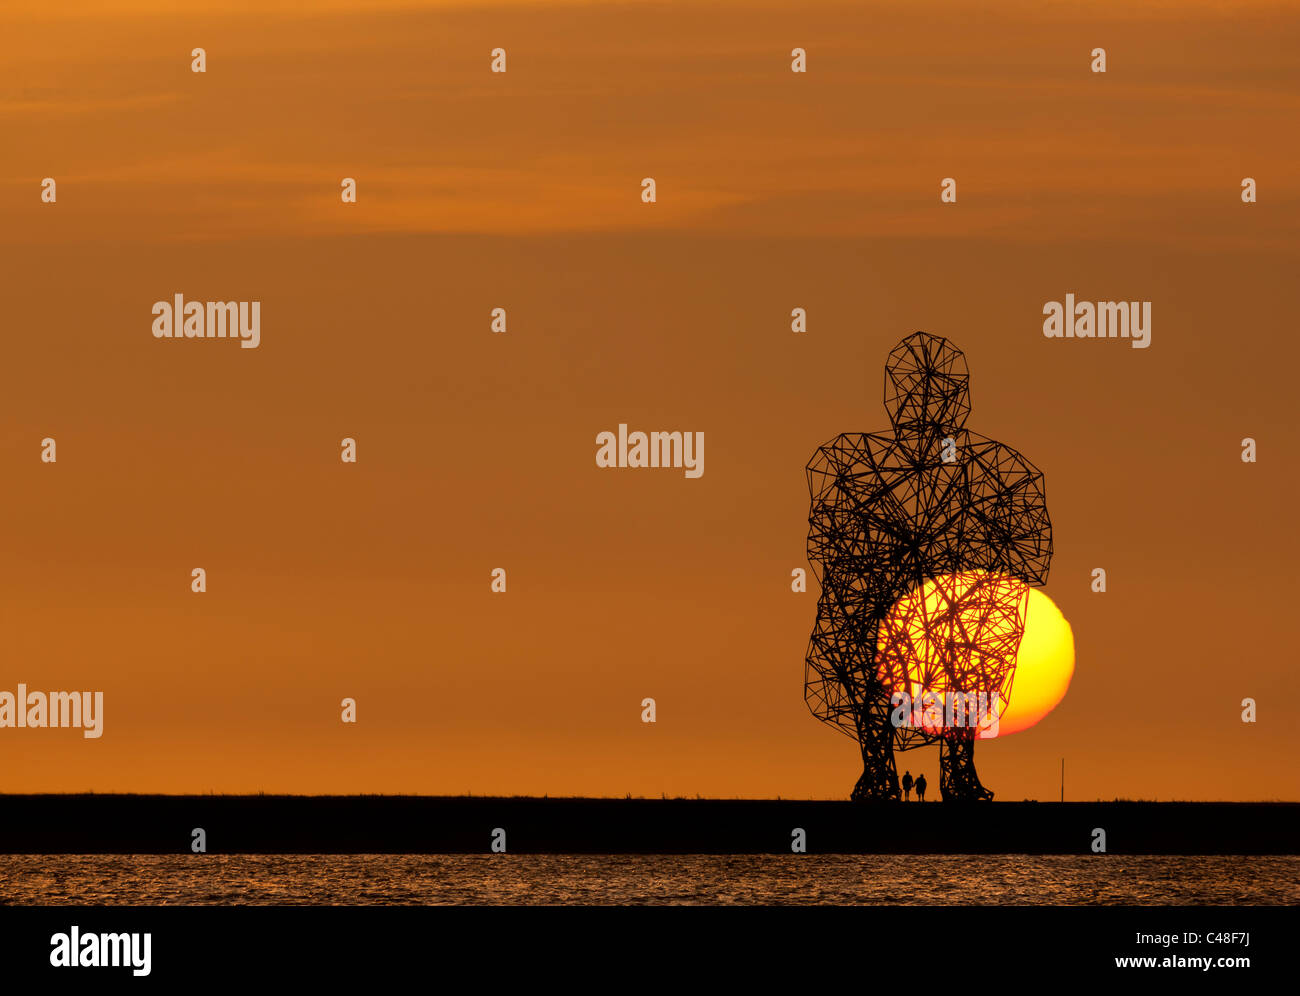 Antony Gormley Exposition bei Sonnenuntergang mit Blick auf den IJsselmeer Lake Lelystad in Flevoland, Niederlande. Die Skulptur von Sir Anthony Gormly. Stockfoto